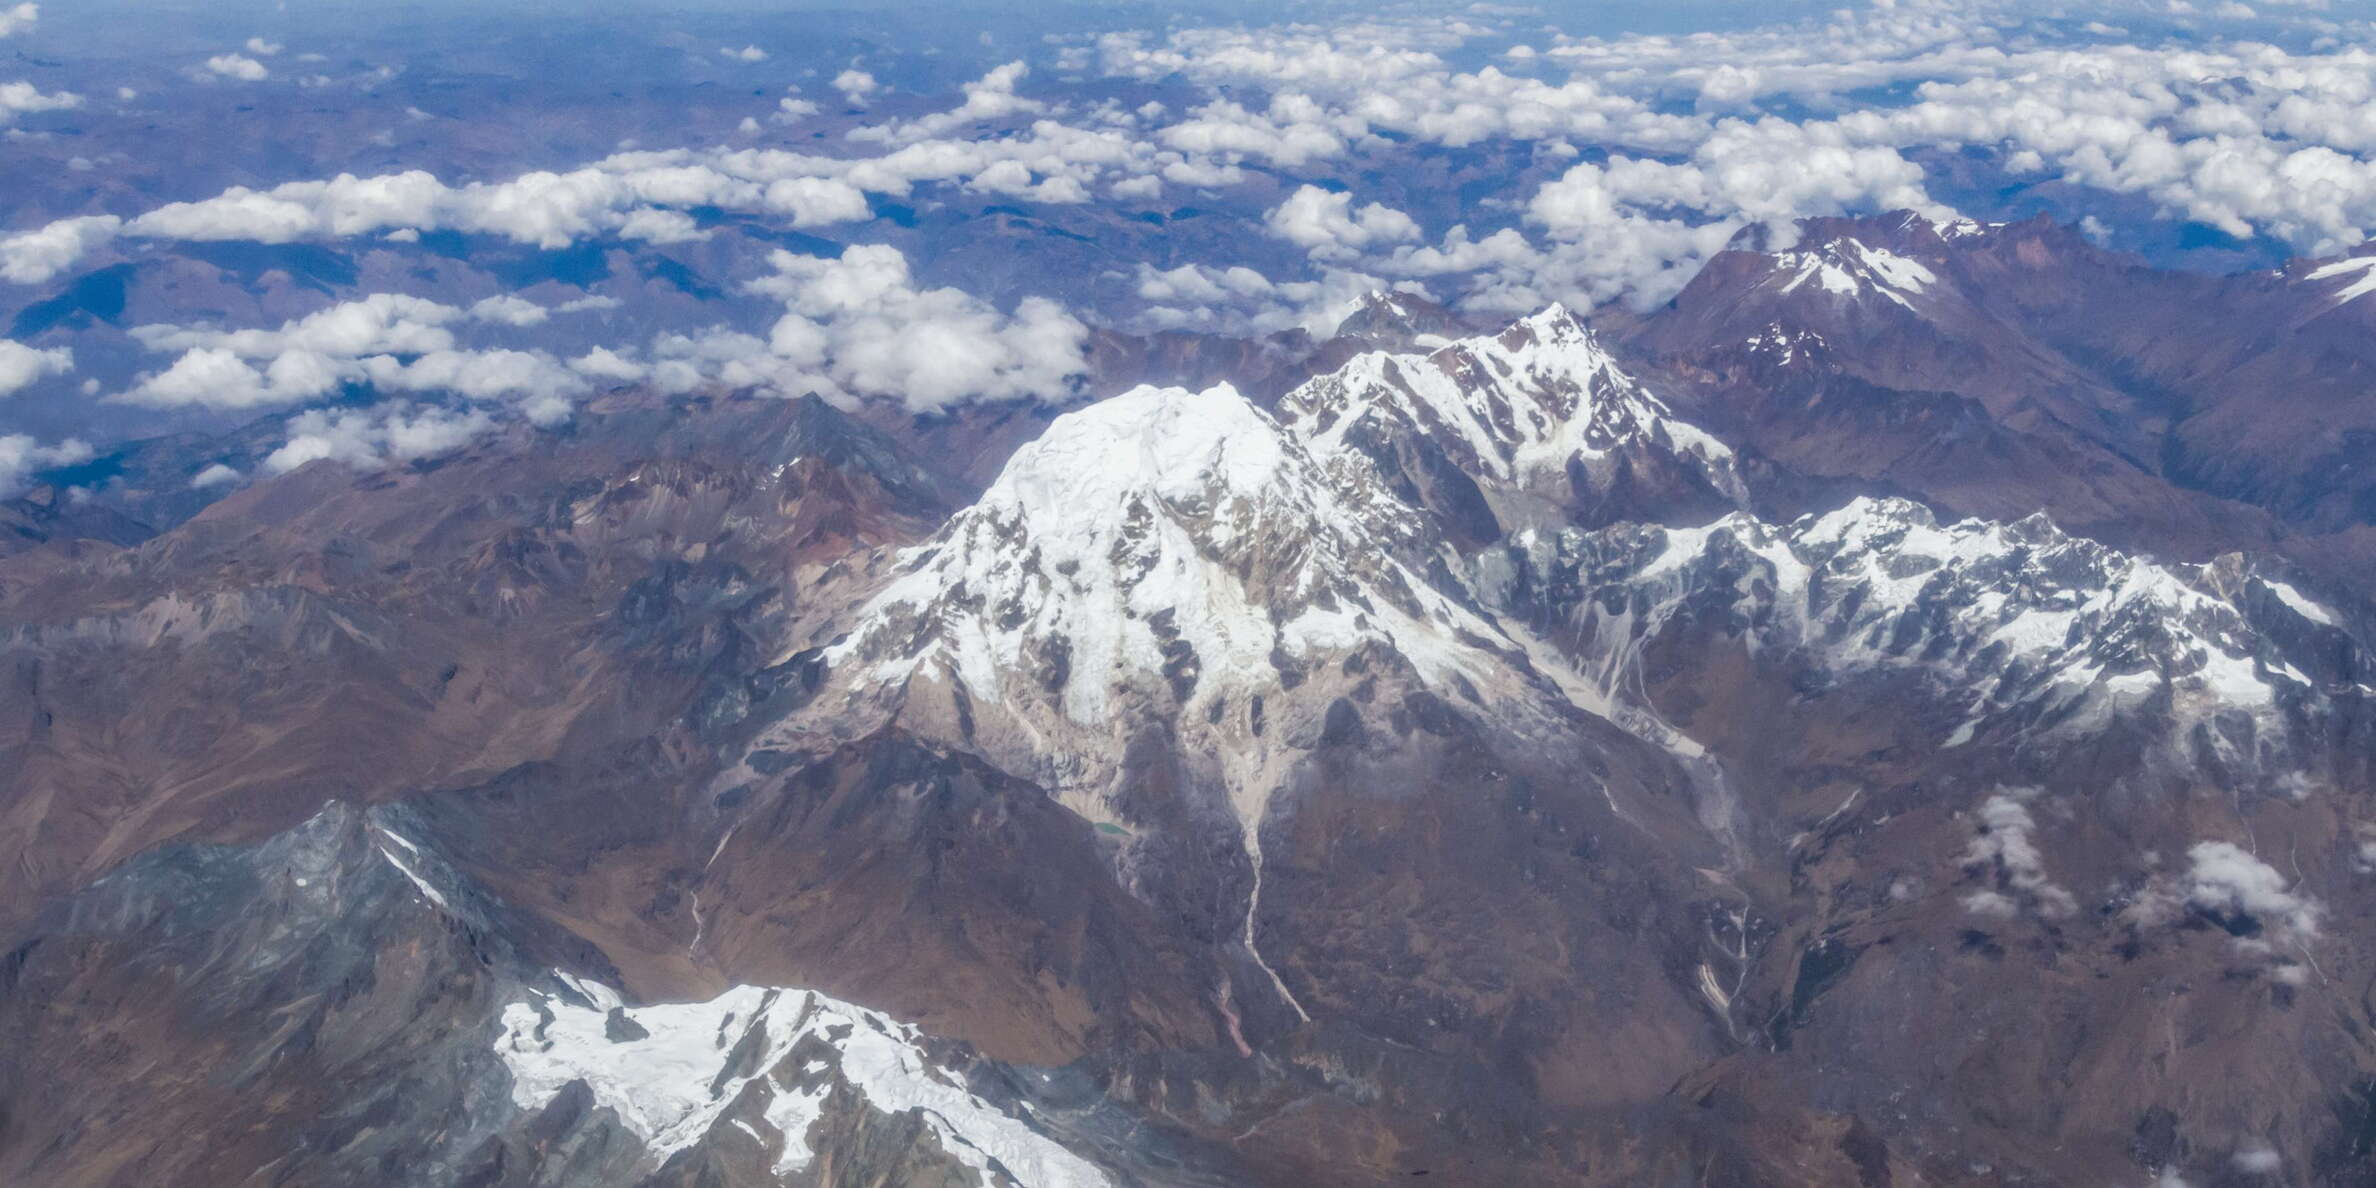 Cordillera Vilcabamba with Nevado Salkantay